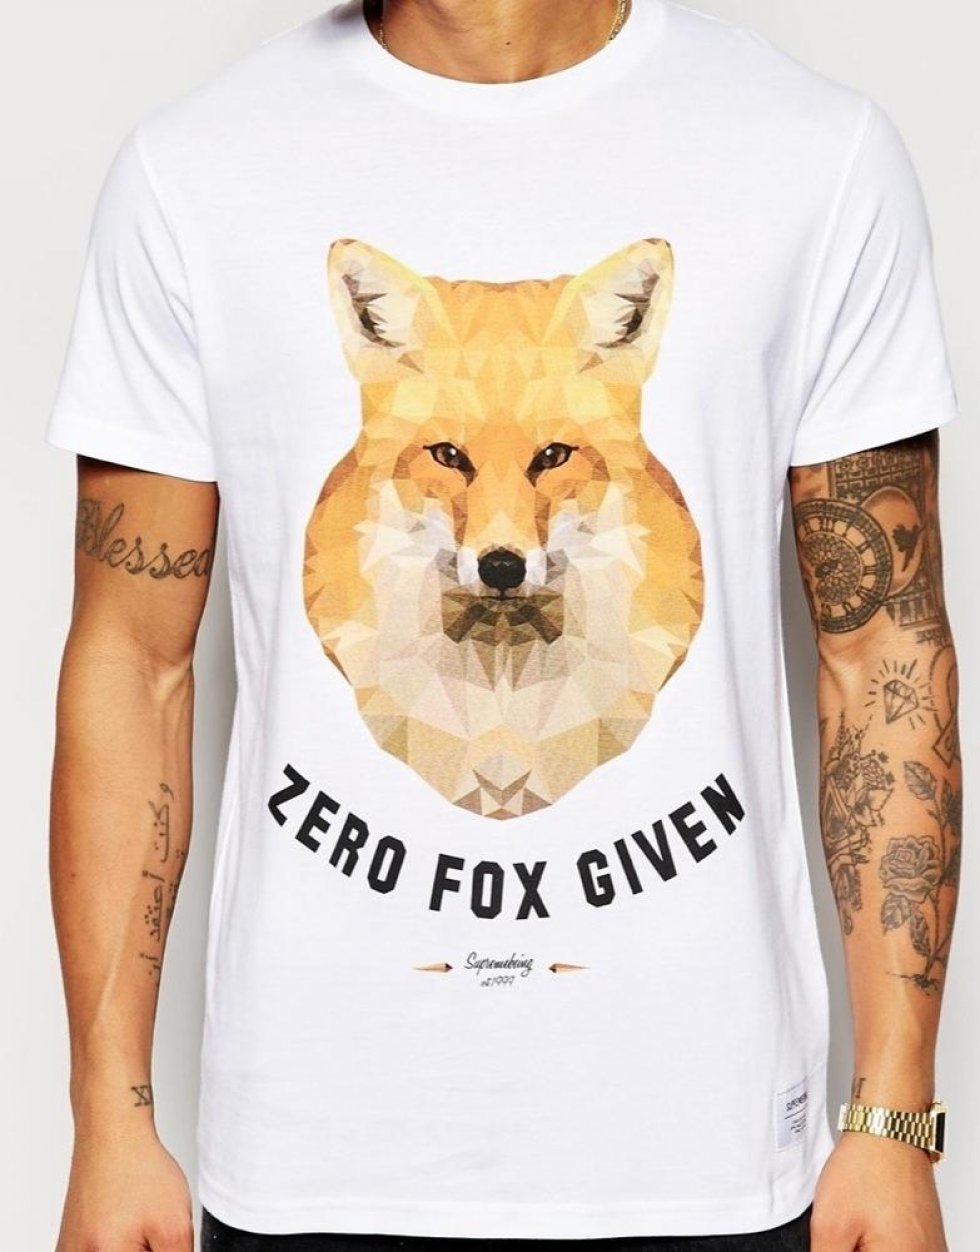 10 friske t-shirts til sommersæsonen 2015